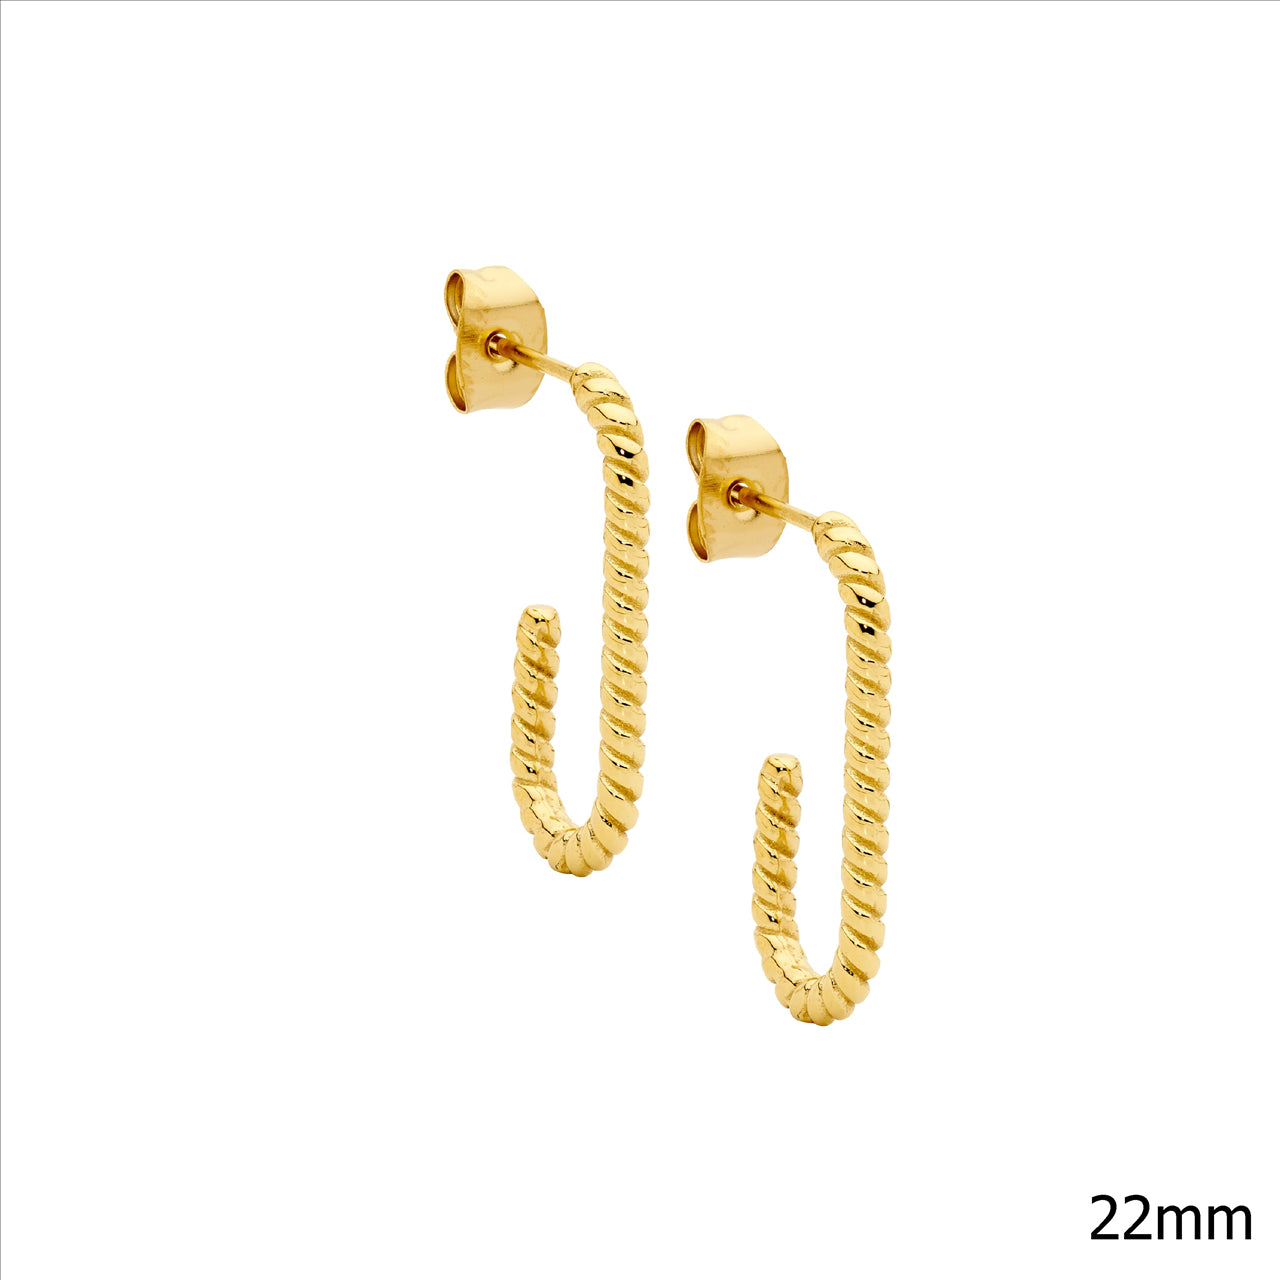 Ellani Stainless Steel IP Gold Plated Hooked Twist Hoop Earrings